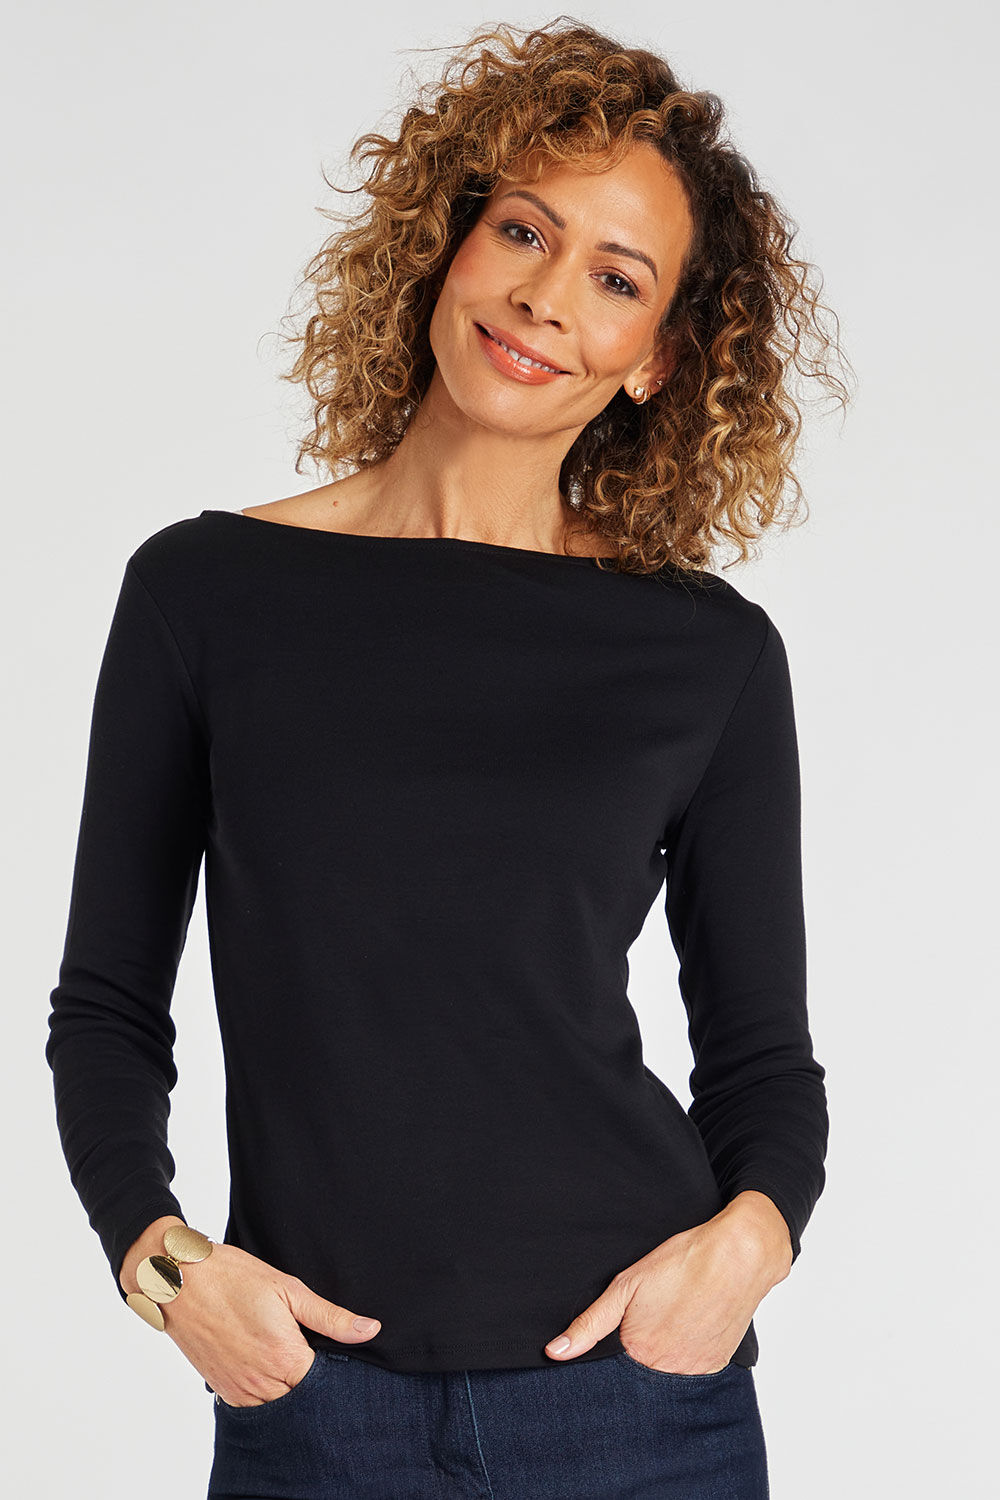 Bonmarche Ladies Black Cotton Casual Long Sleeve Boat Neck Plain T-Shirt, Size: 14